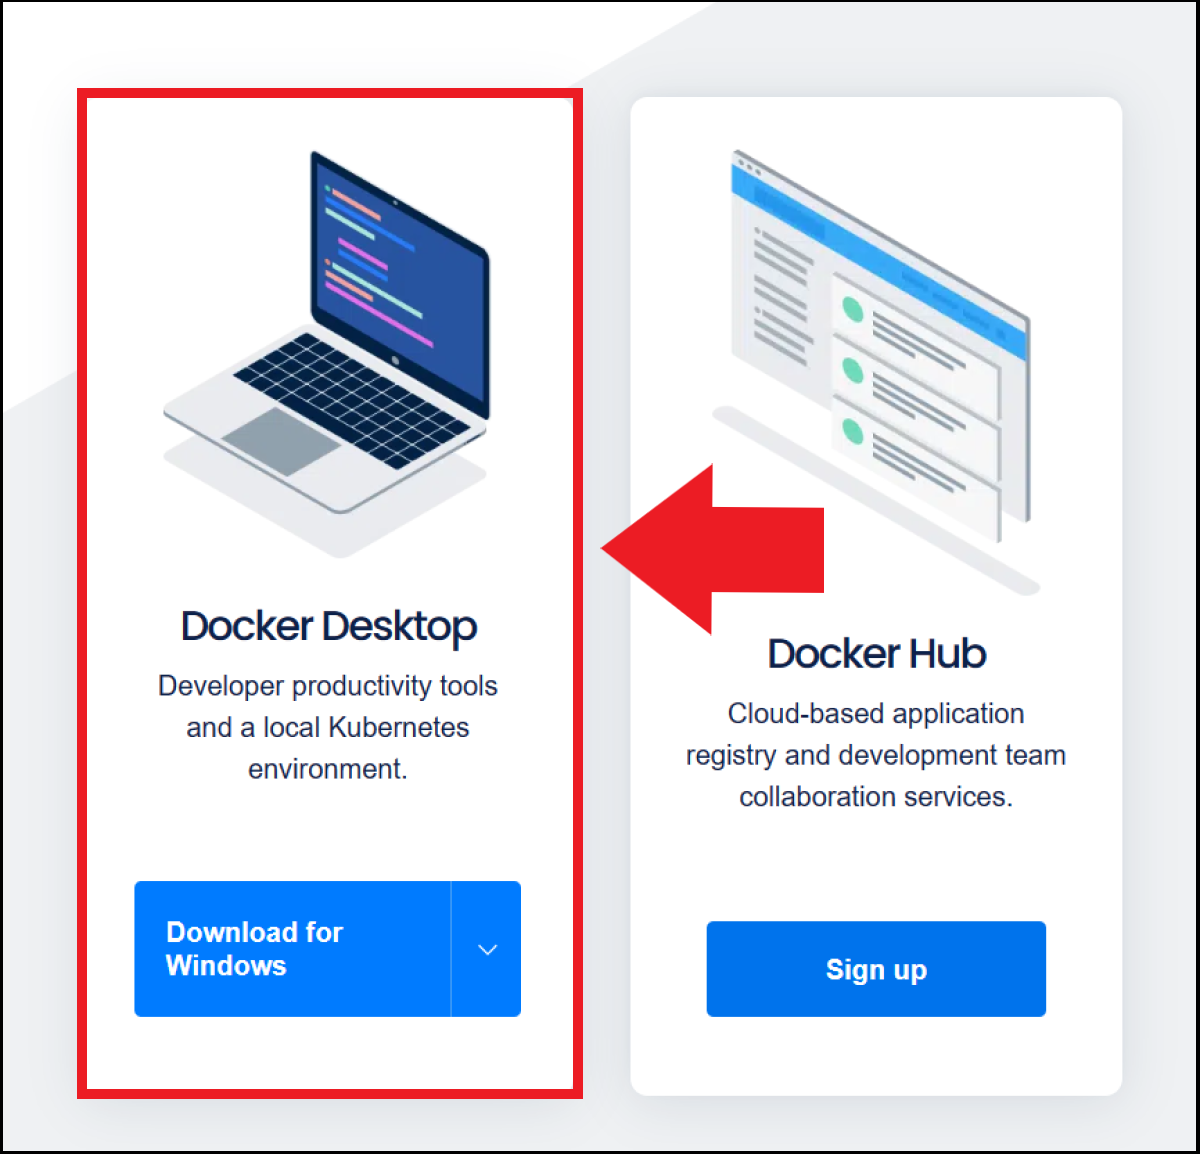 Captura de la página web de Docker con la opción de descargar Docker Desktop